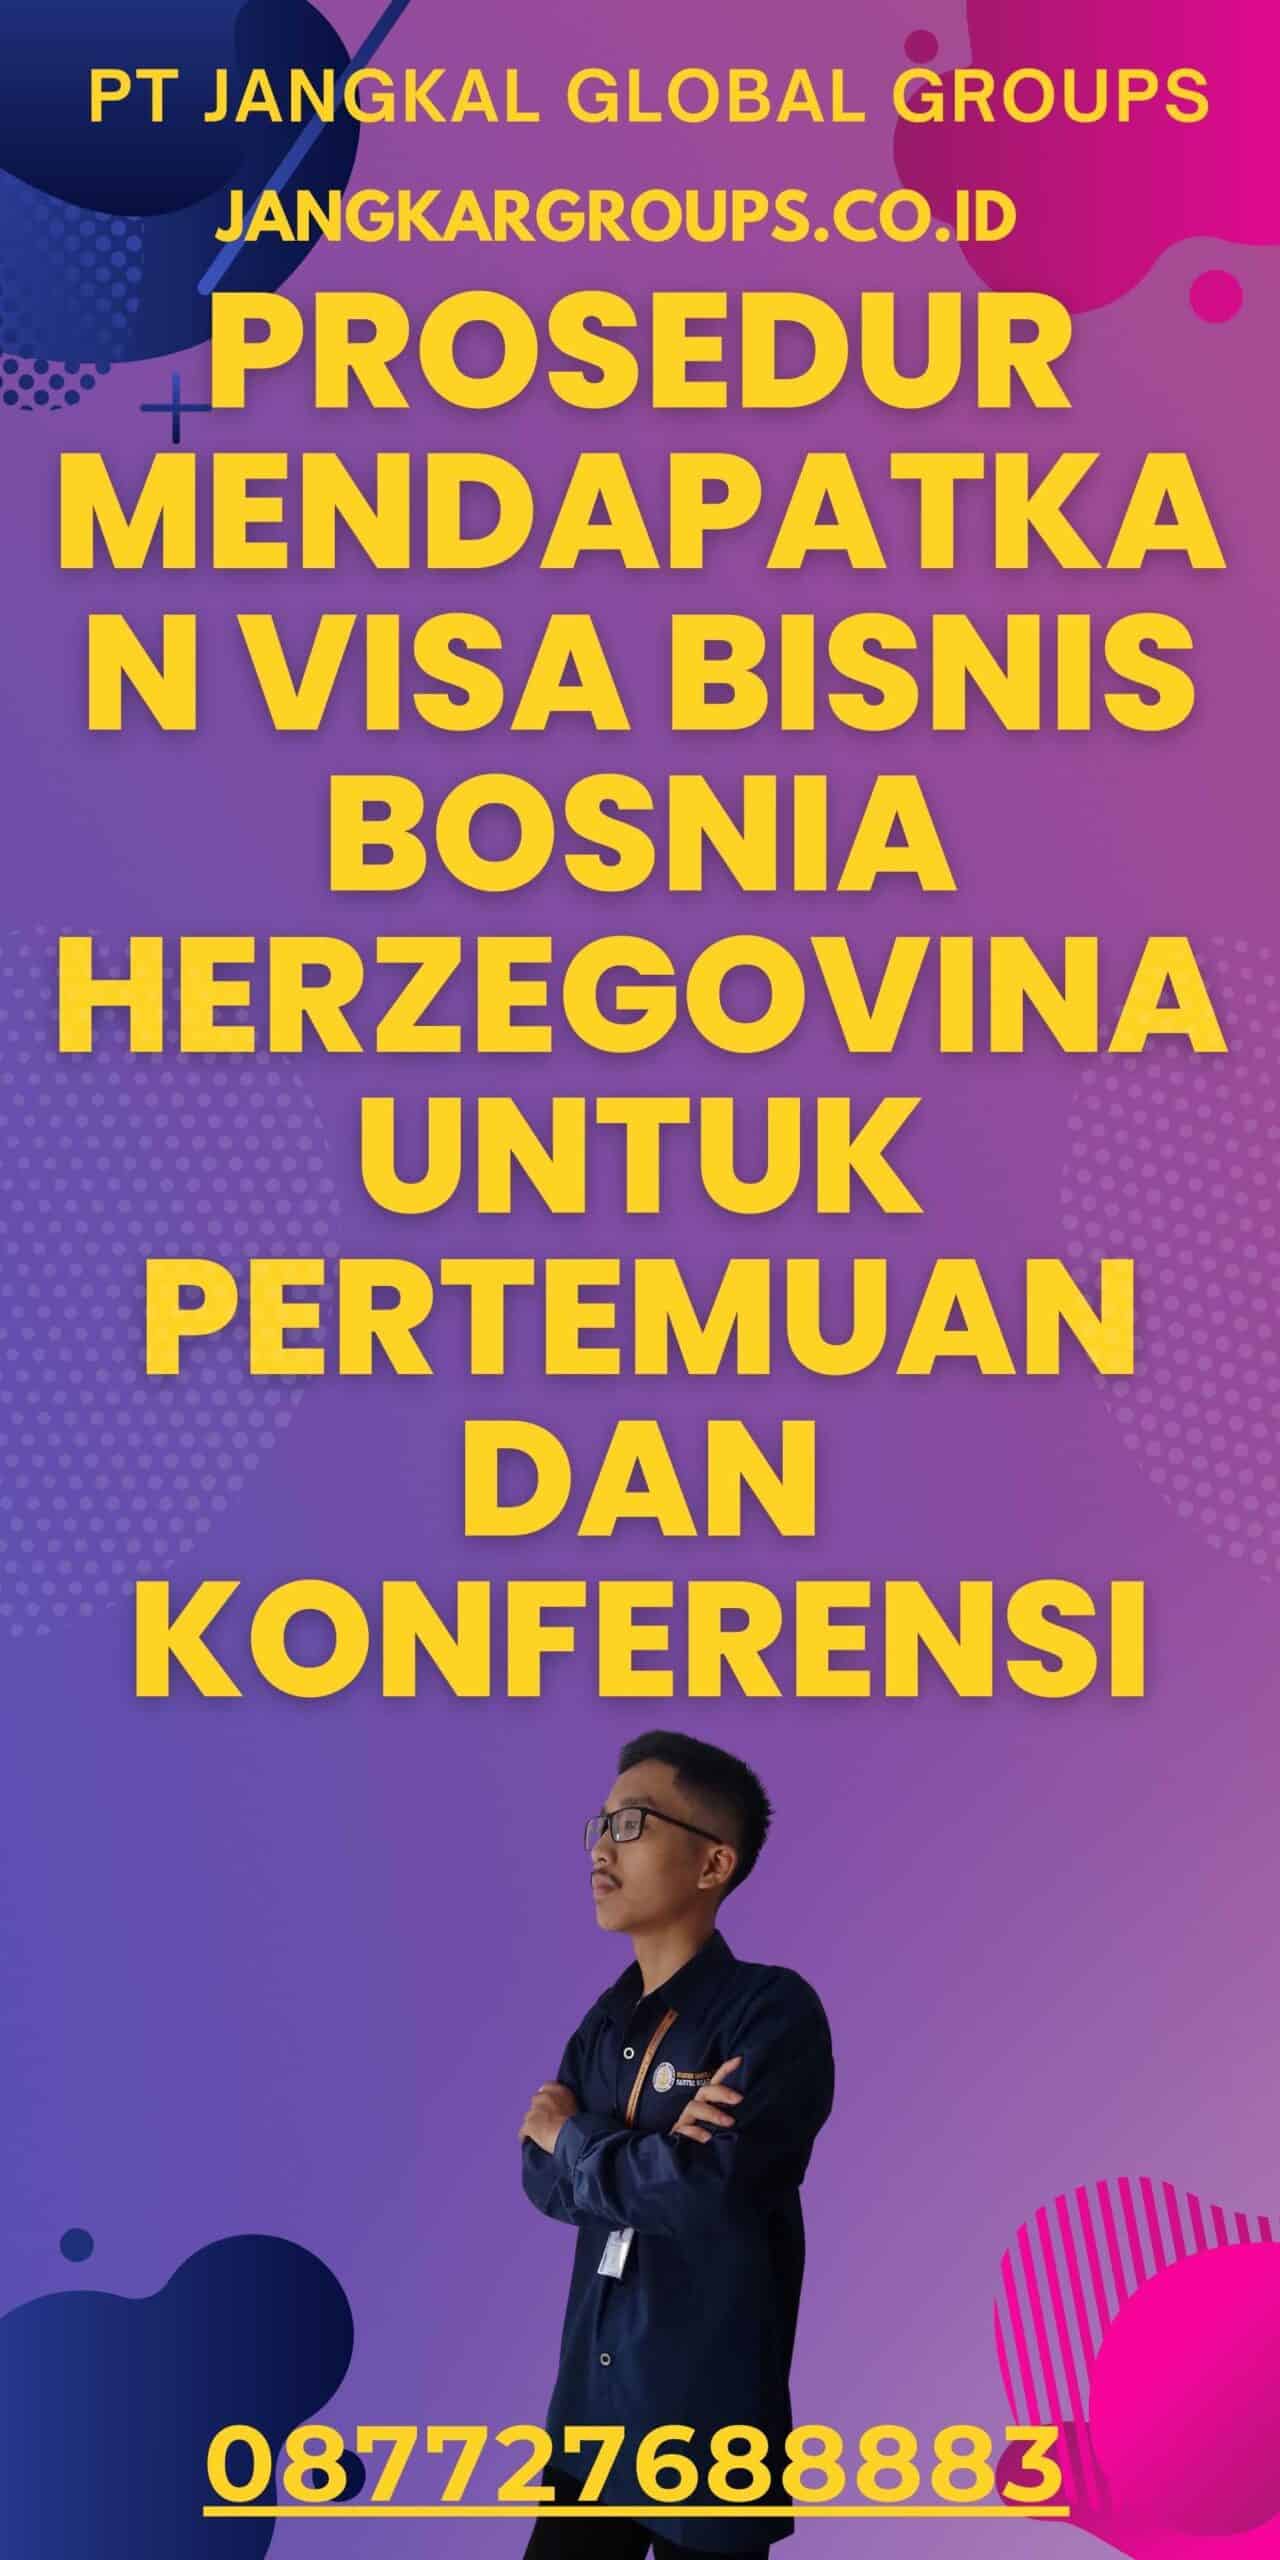 Prosedur Mendapatkan Visa Bisnis Bosnia Herzegovina untuk Pertemuan dan Konferensi